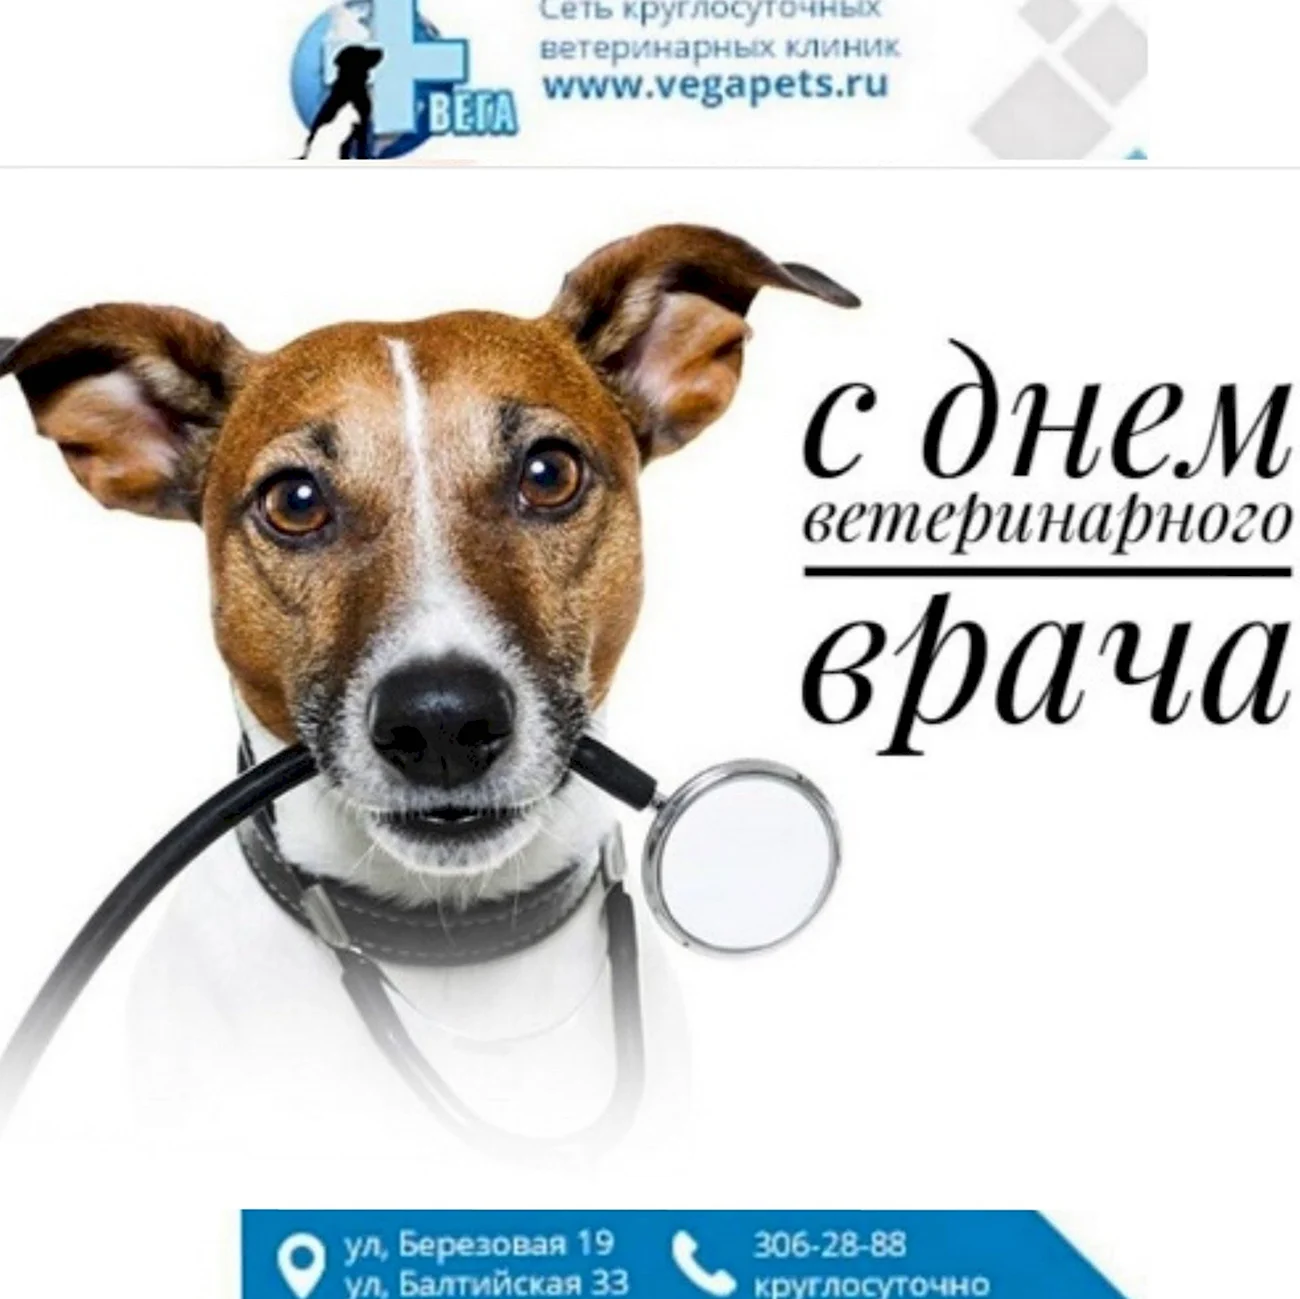 Международный день ветеринарного врача World Veterinary Day. Поздравление